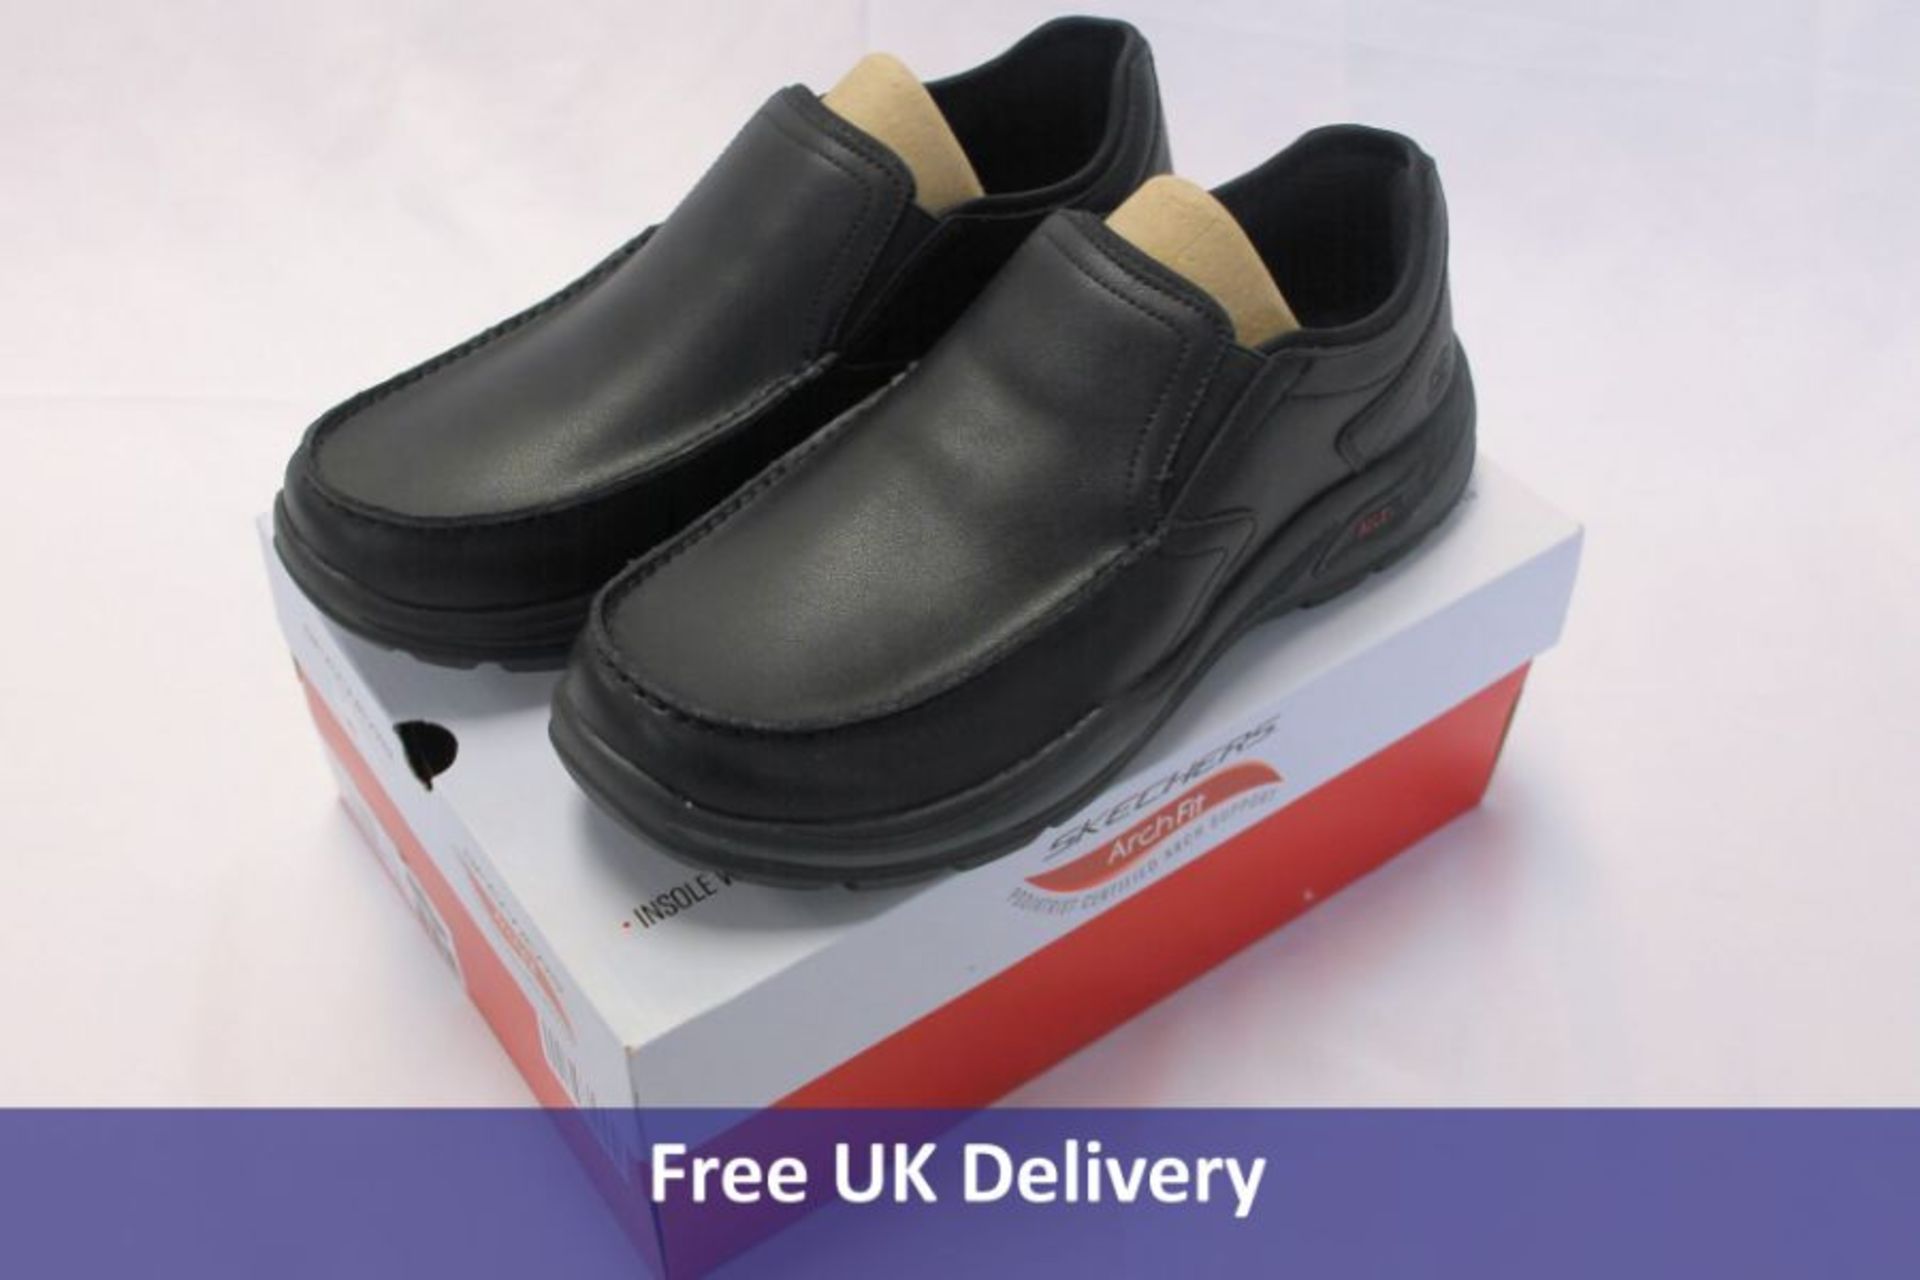 Sketchers Arch Fit Motley Mens Shoes, Black, Size UK 10